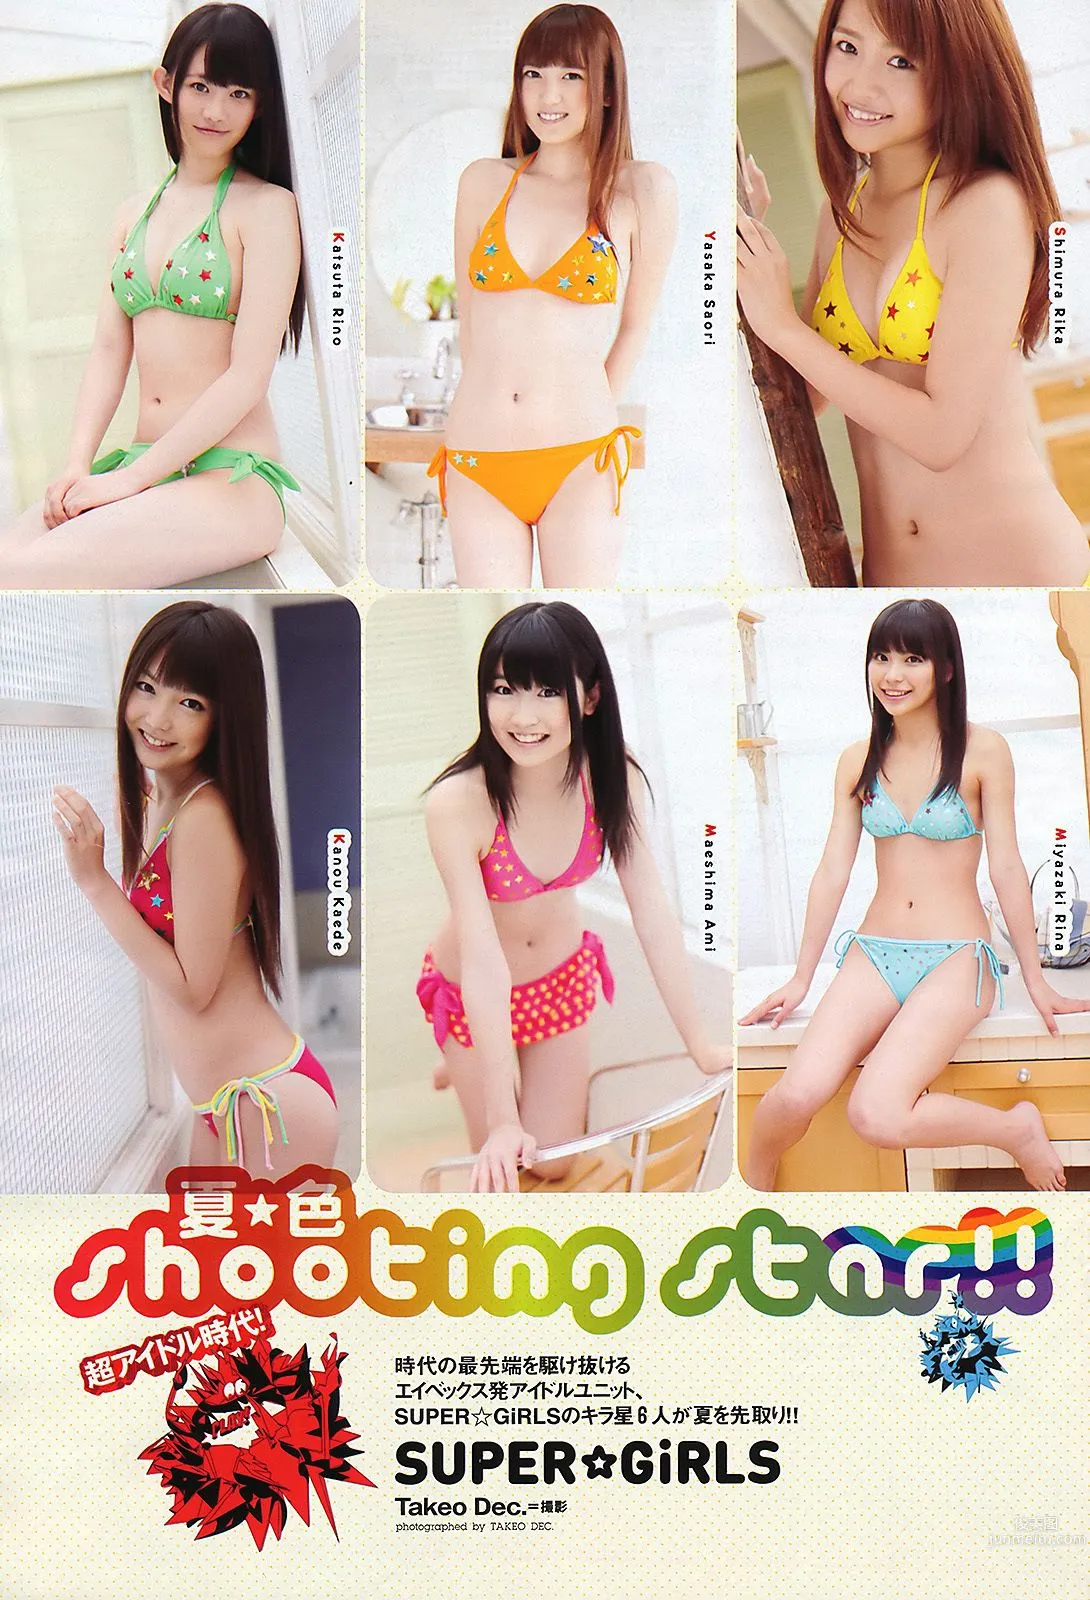 石原さとみ アイドリング!!! SUPER☆GiRLS ももいろクローバーＺ 中村一 [Weekly Playboy] 2011年No.28 写真杂志15